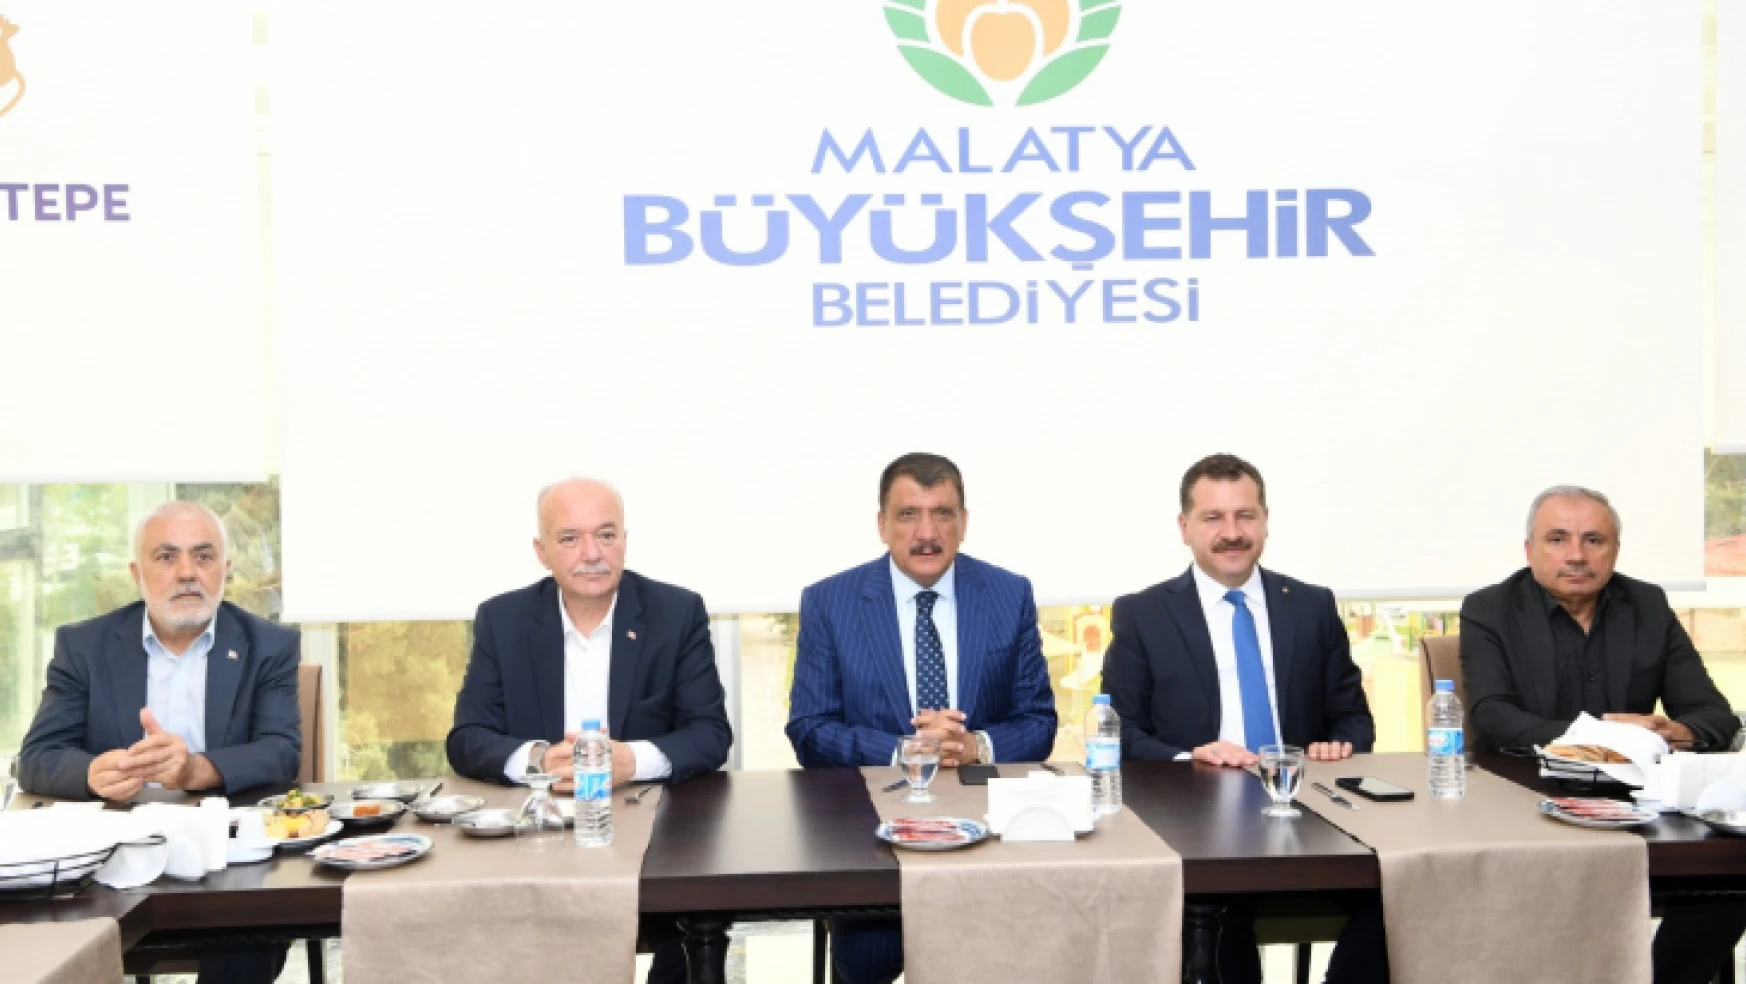 Malatya Büyükşehir Belediye Başkanımız Güçlü İradesiyle Şehrin Her Sorununu Çözüyor